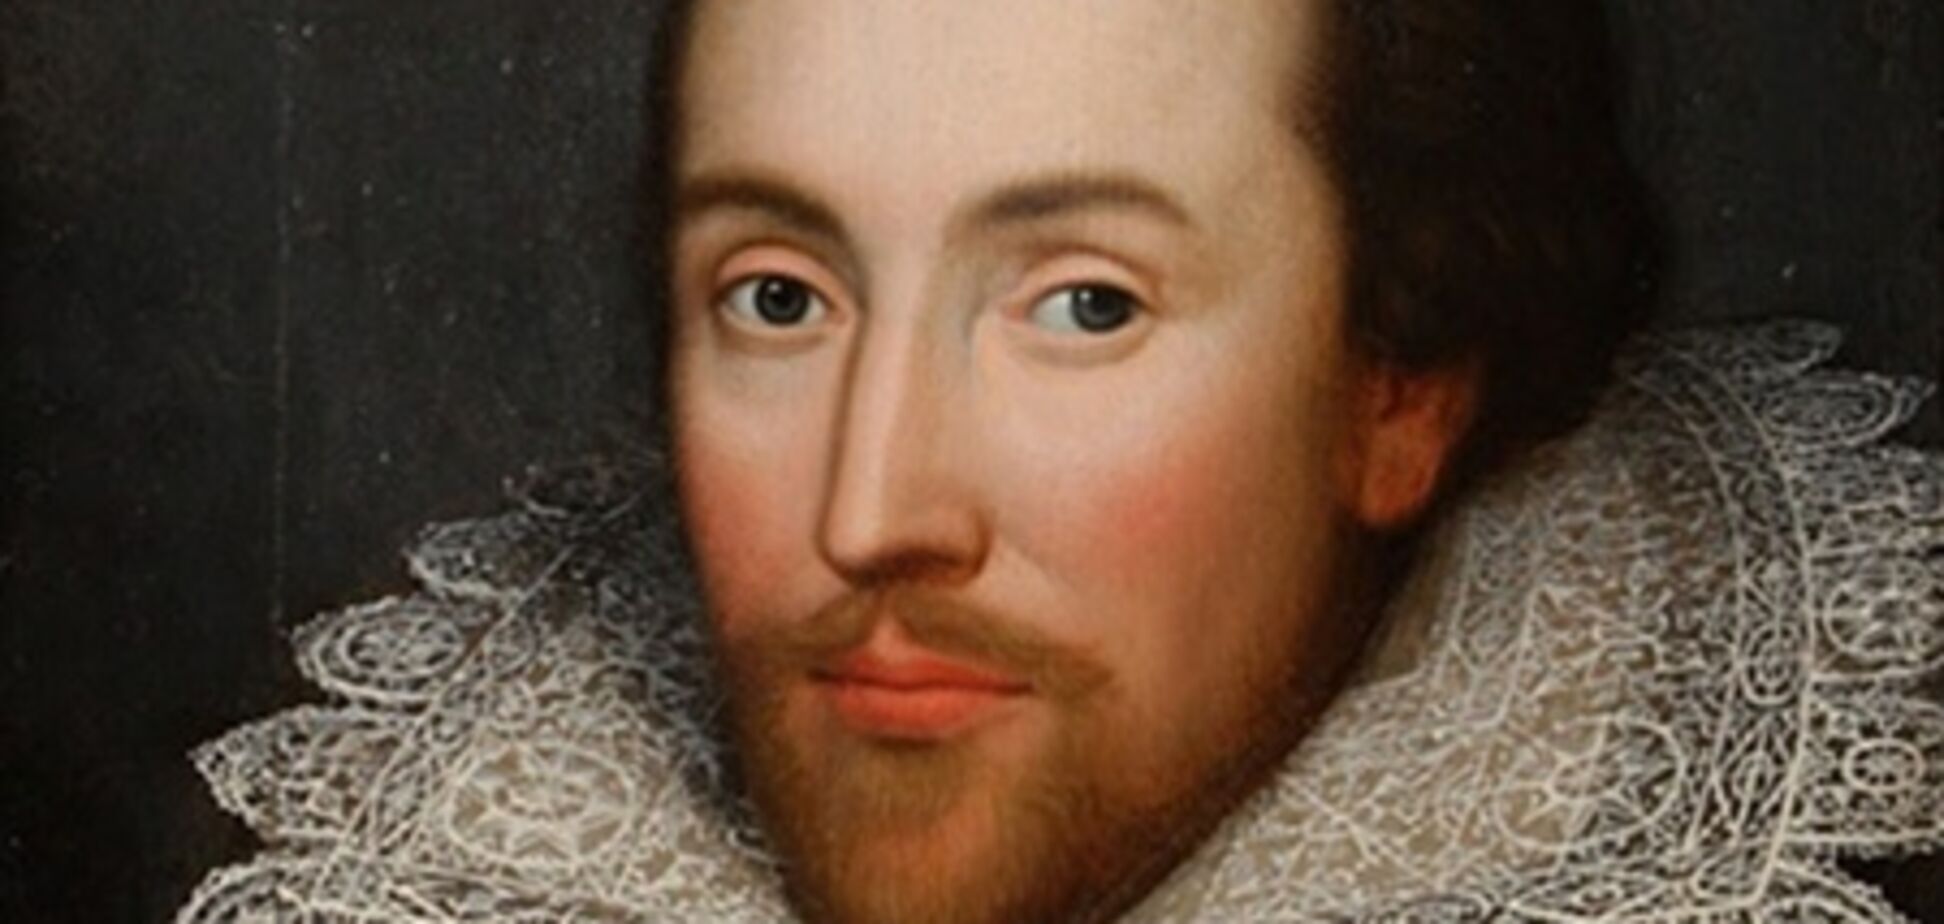 Пьесы Шекспира переведут в прозу для большей доступности